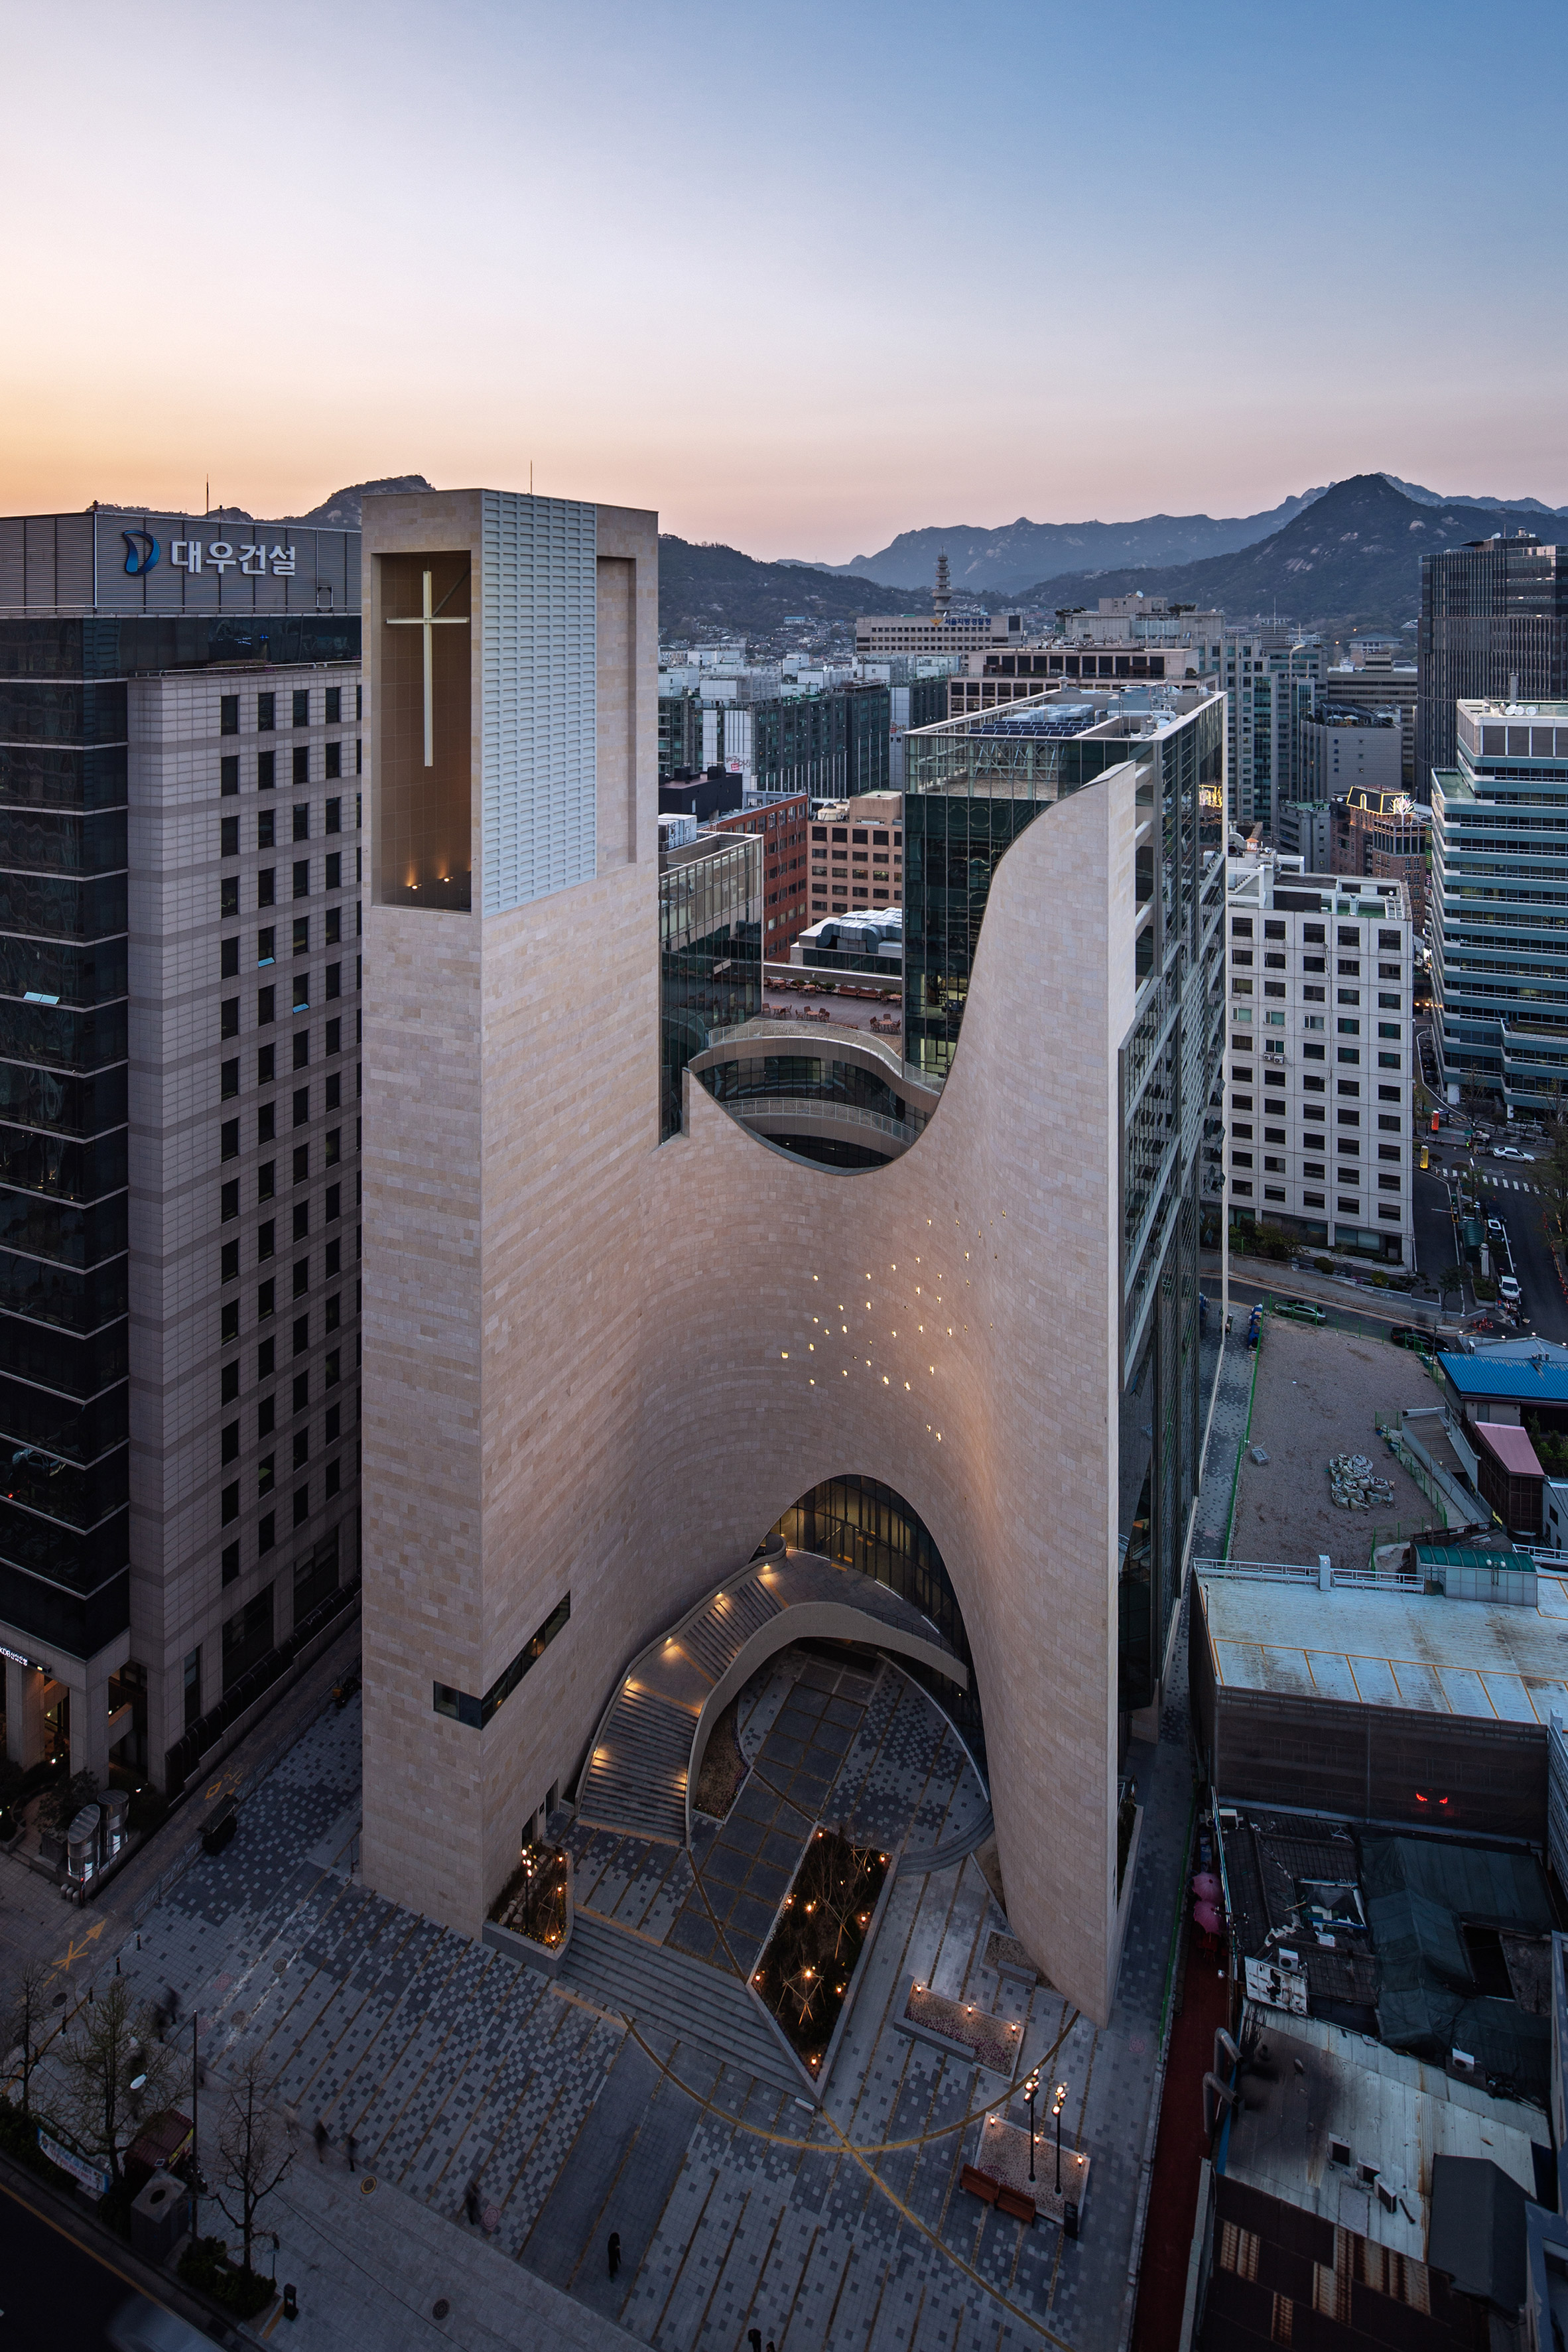 Saemoonan Church in Seoul South Korea, by Seoinn Design Group